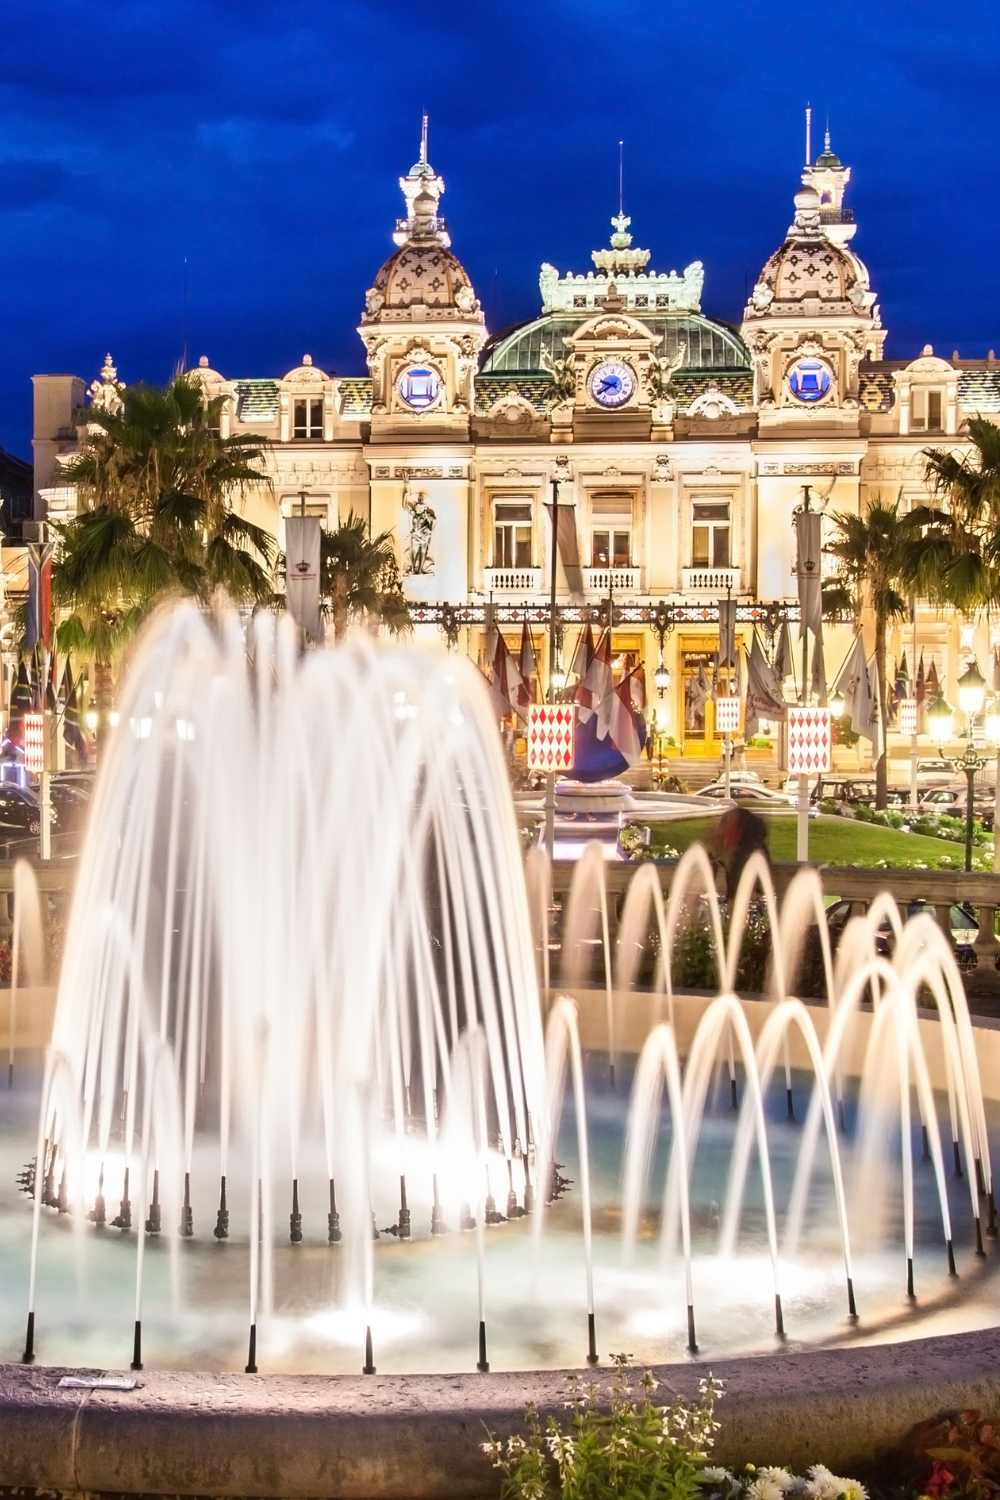 Casino de Monte-Carlo, Monaco, Casino getaways, travel destinations